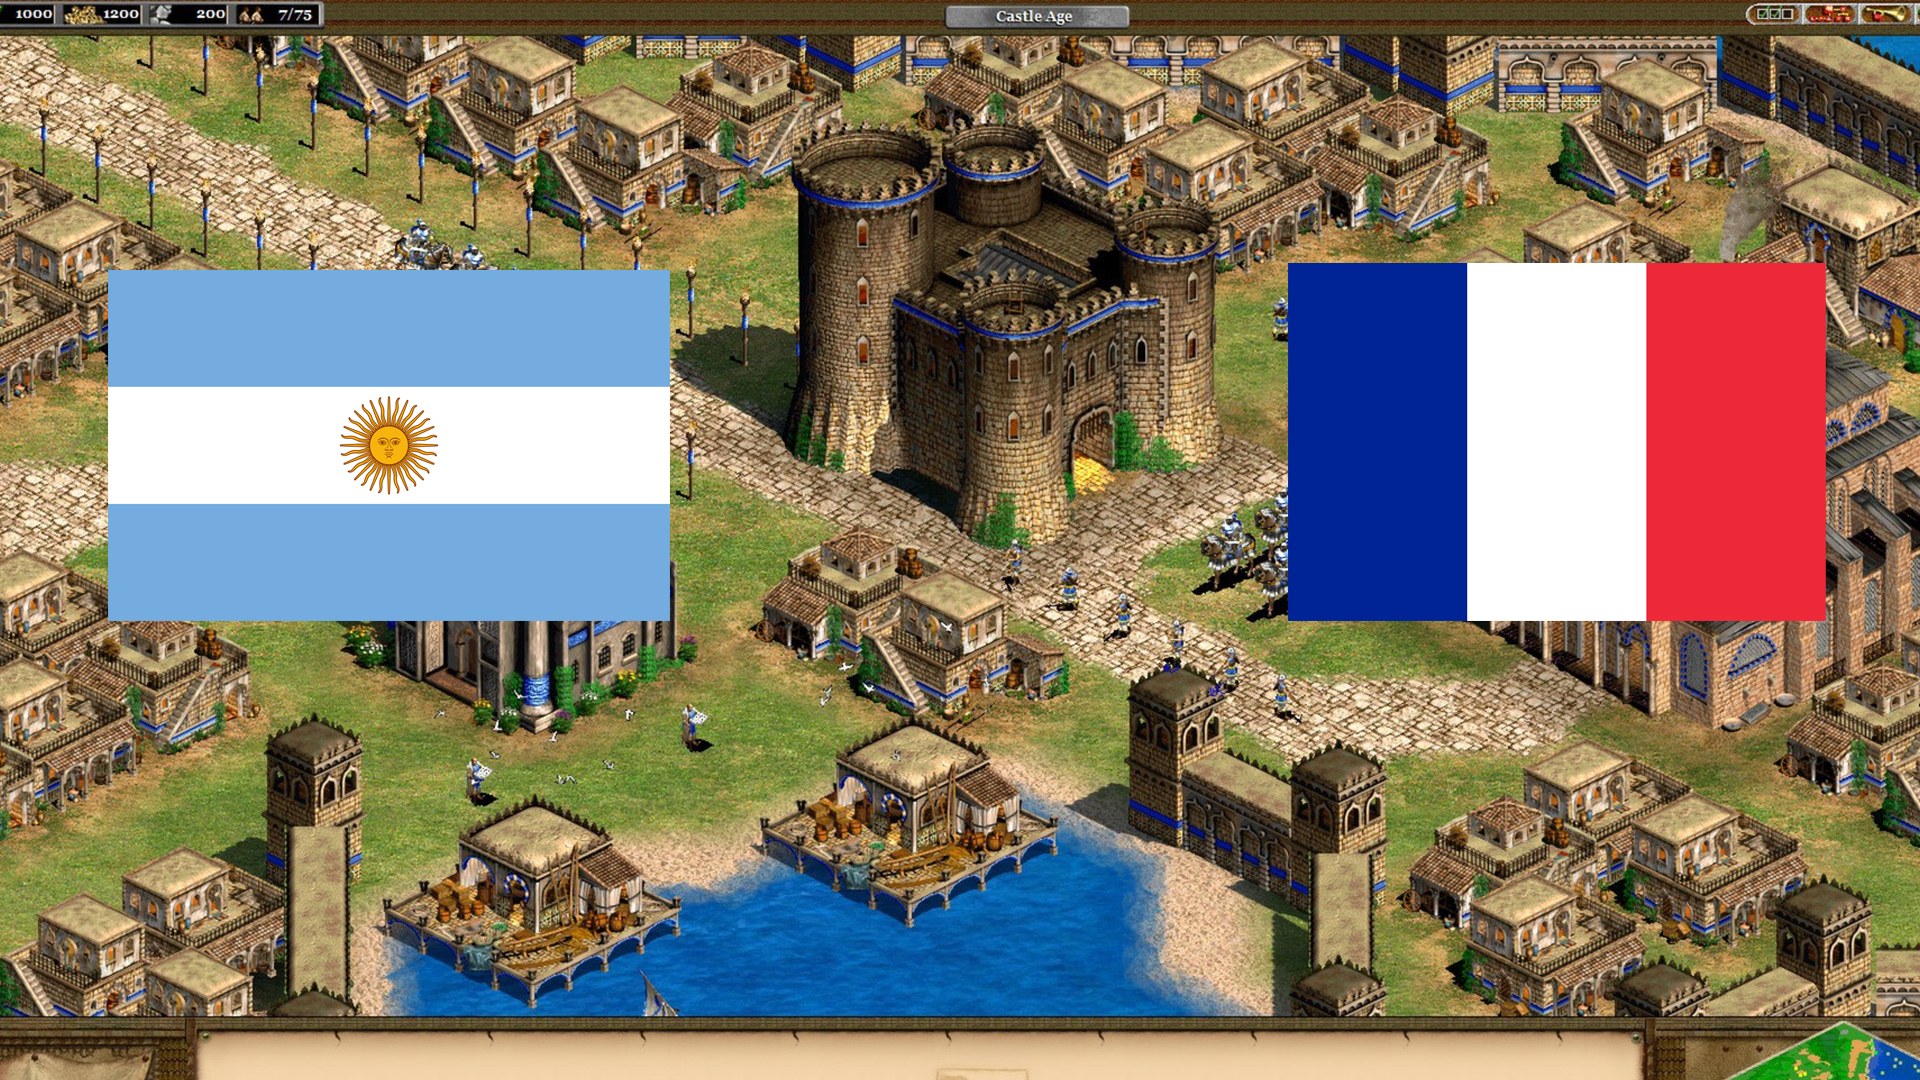 Argentina eliminó a Francia y va por Finlandia en el Mundial de Age of Empires II